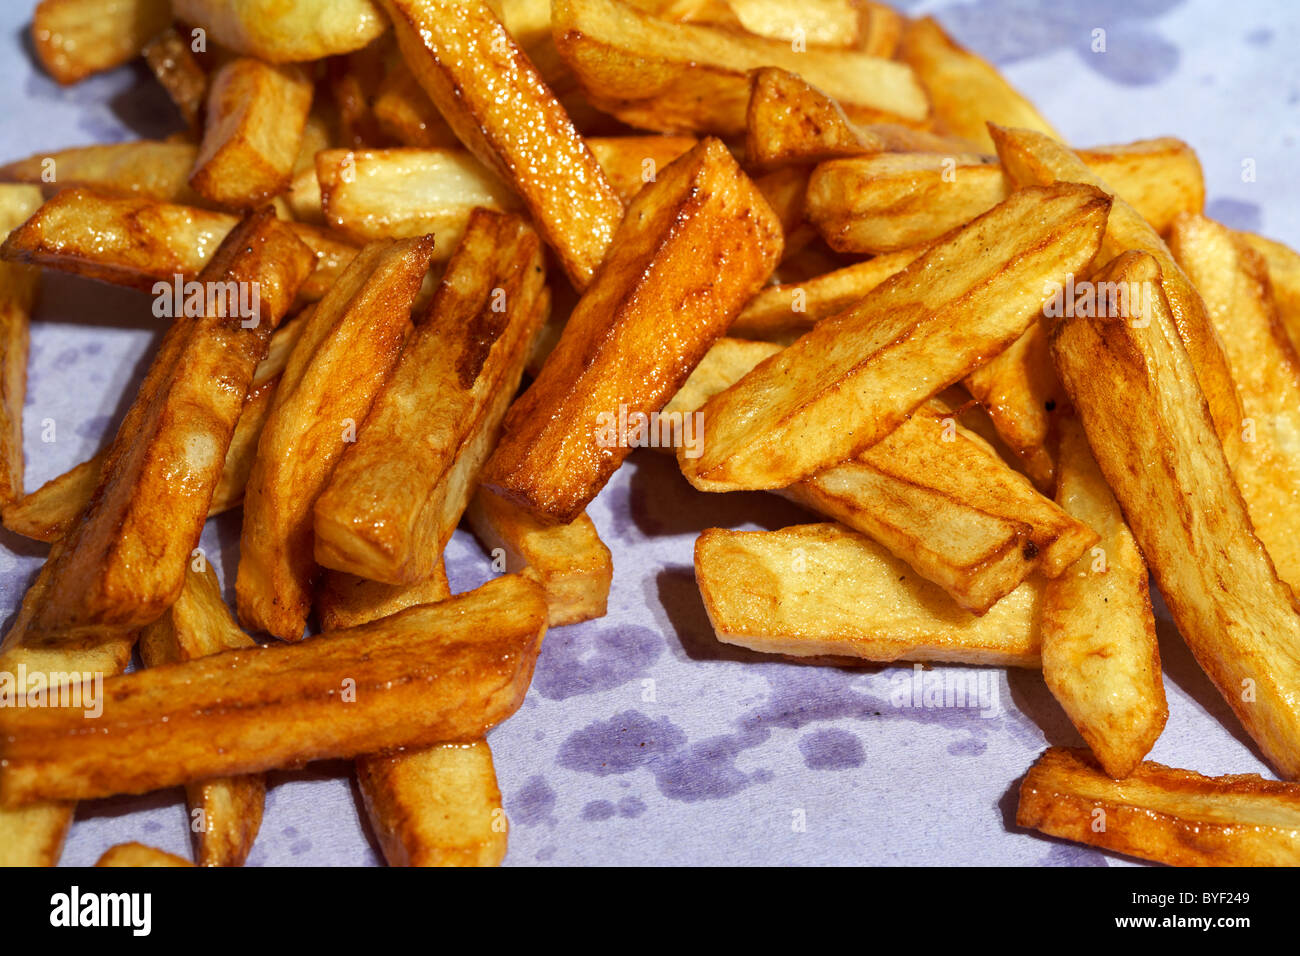 Golden Brown fait maison fraîchement préparés à base de pommes de terre chips irlandais de séchage sur papier cuisine Banque D'Images